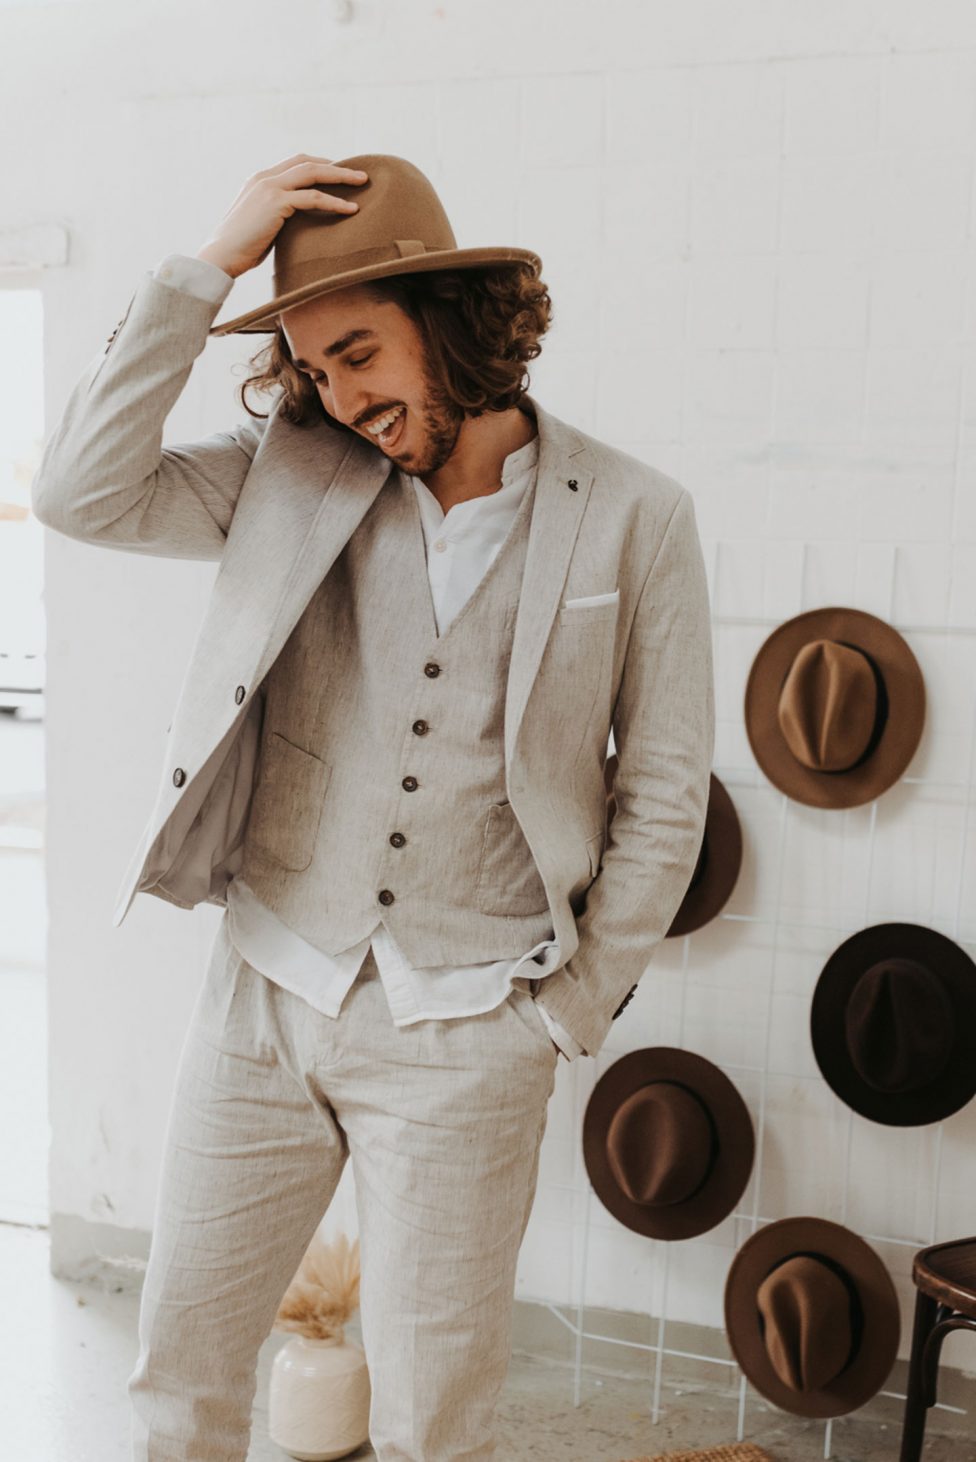 Hochzeitswahn - Ein eleganter Mann in grauem Anzug und weißem Hemd steht lächelnd und an seinen Hut lüpfend in einem Raum, an dessen Wand eine Reihe von Hüten hängt.